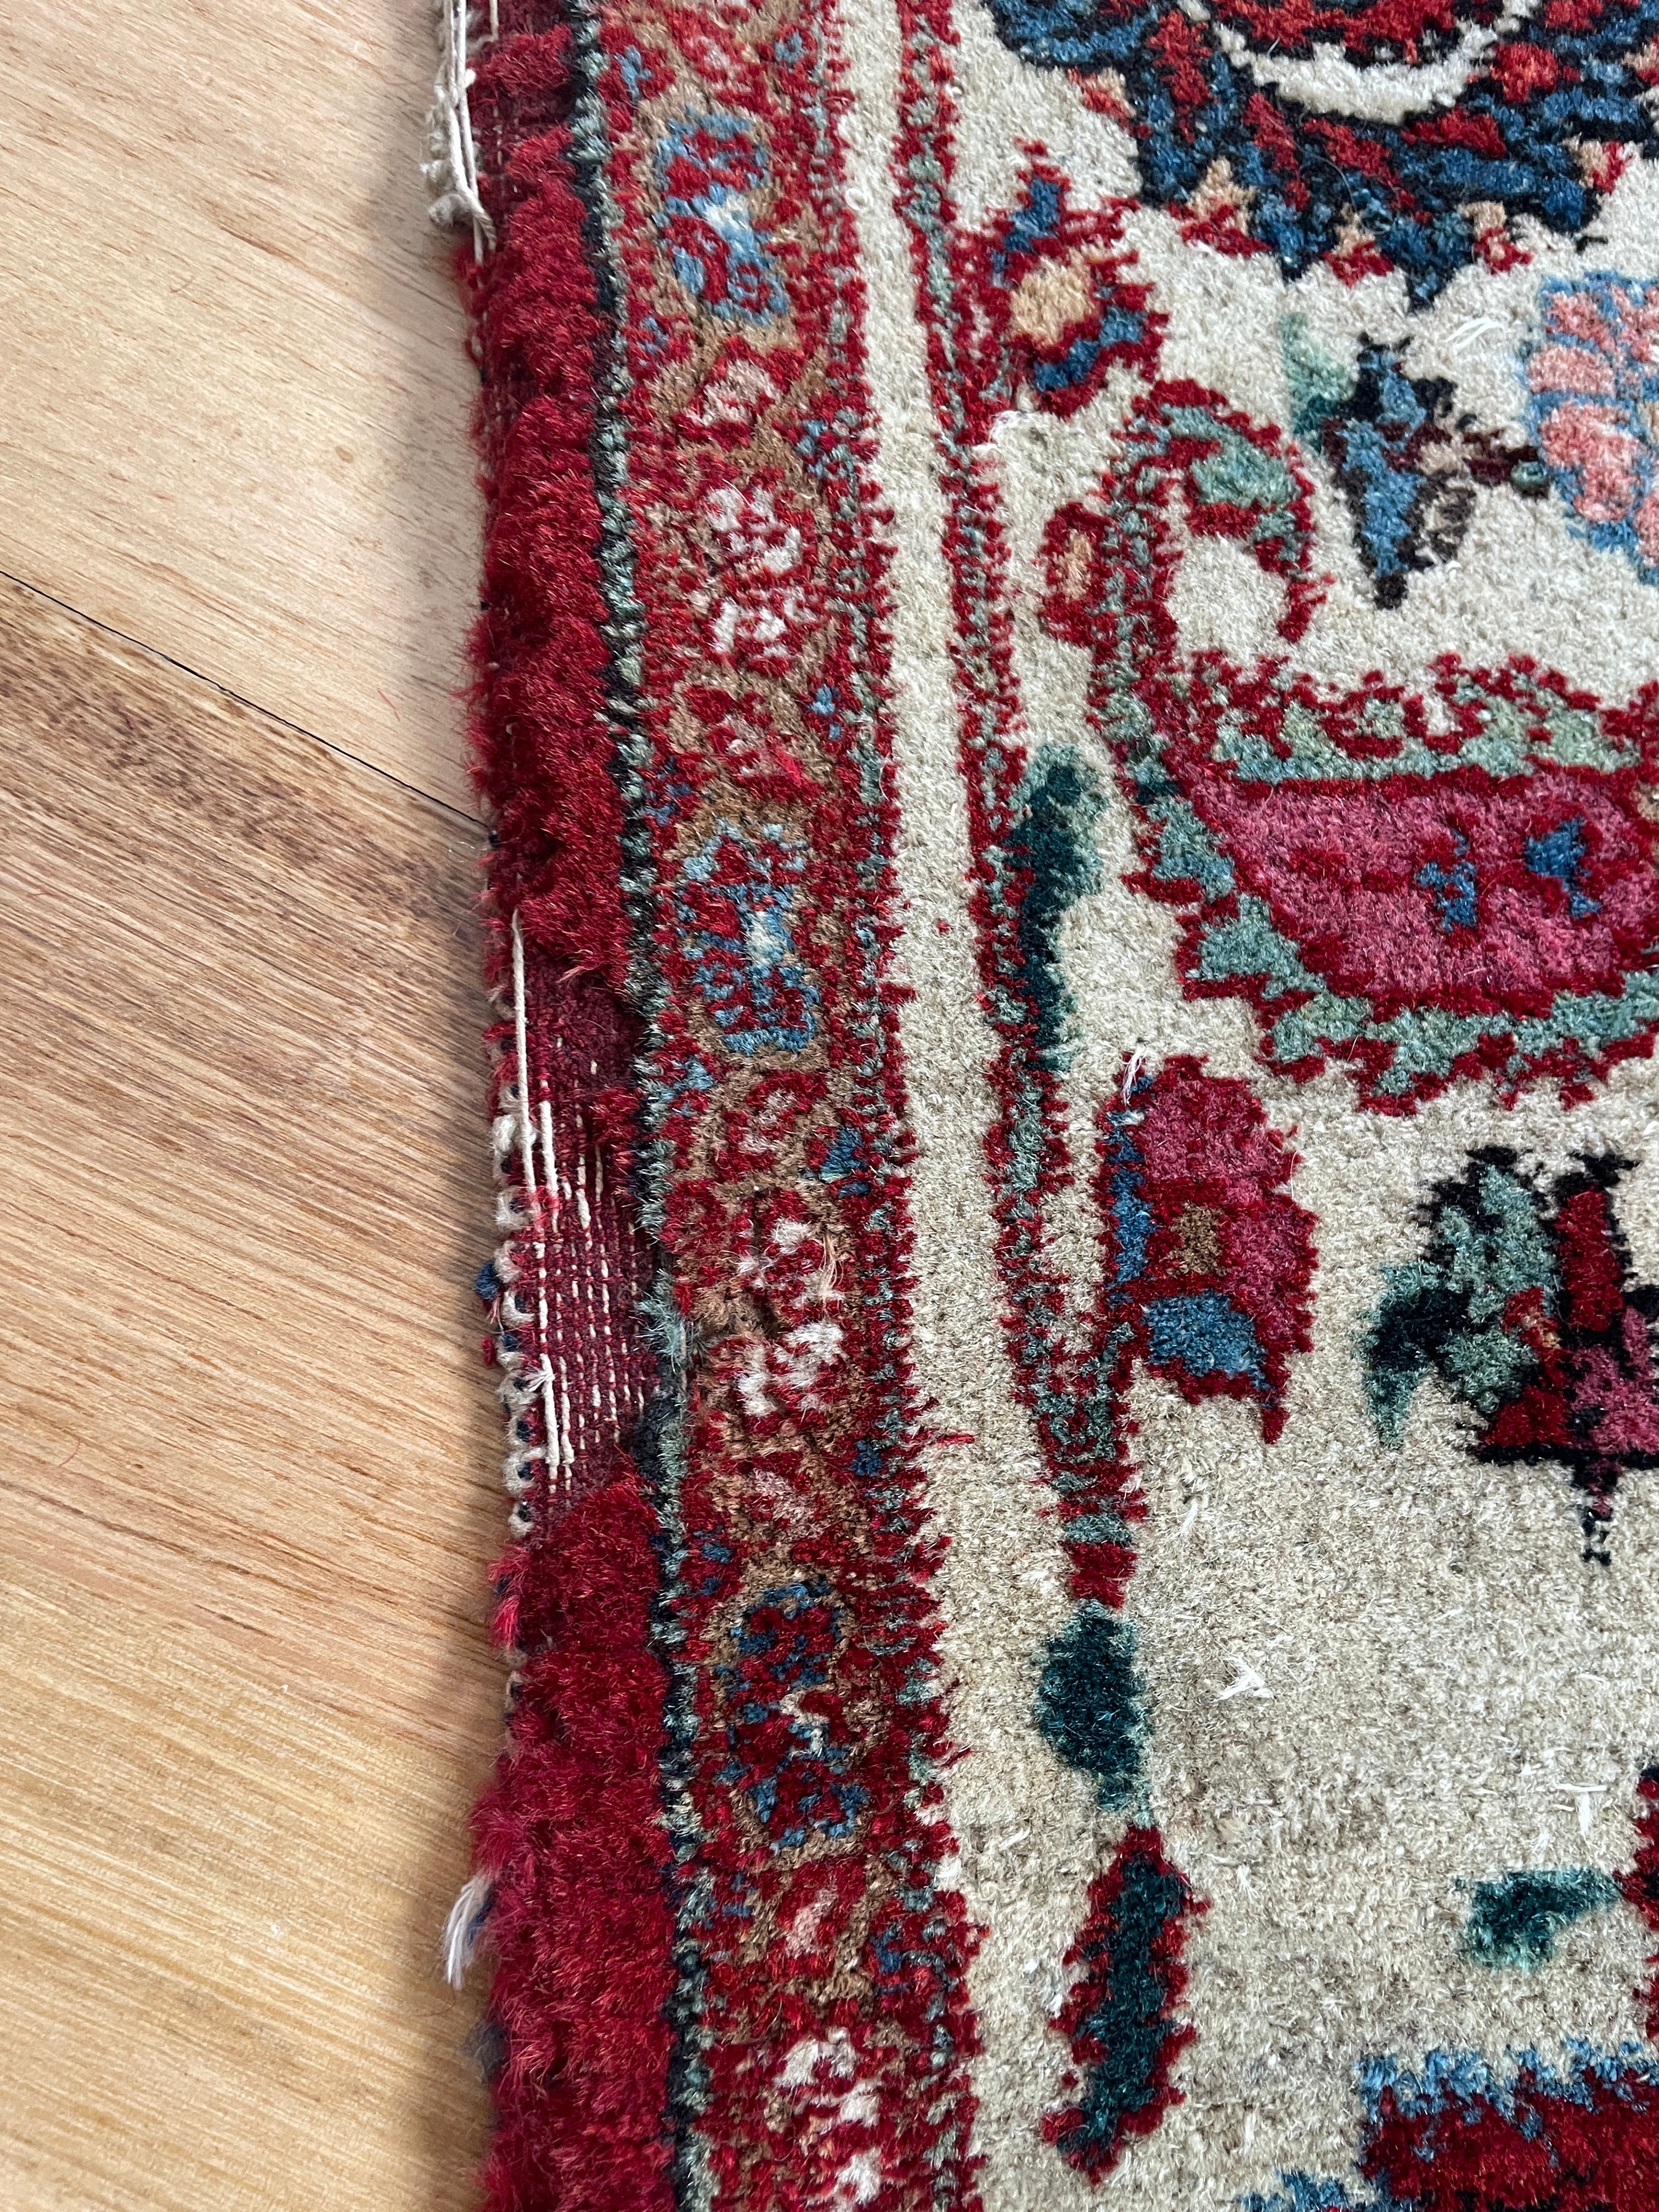 Vintage Persian wool silk rug 3 meters